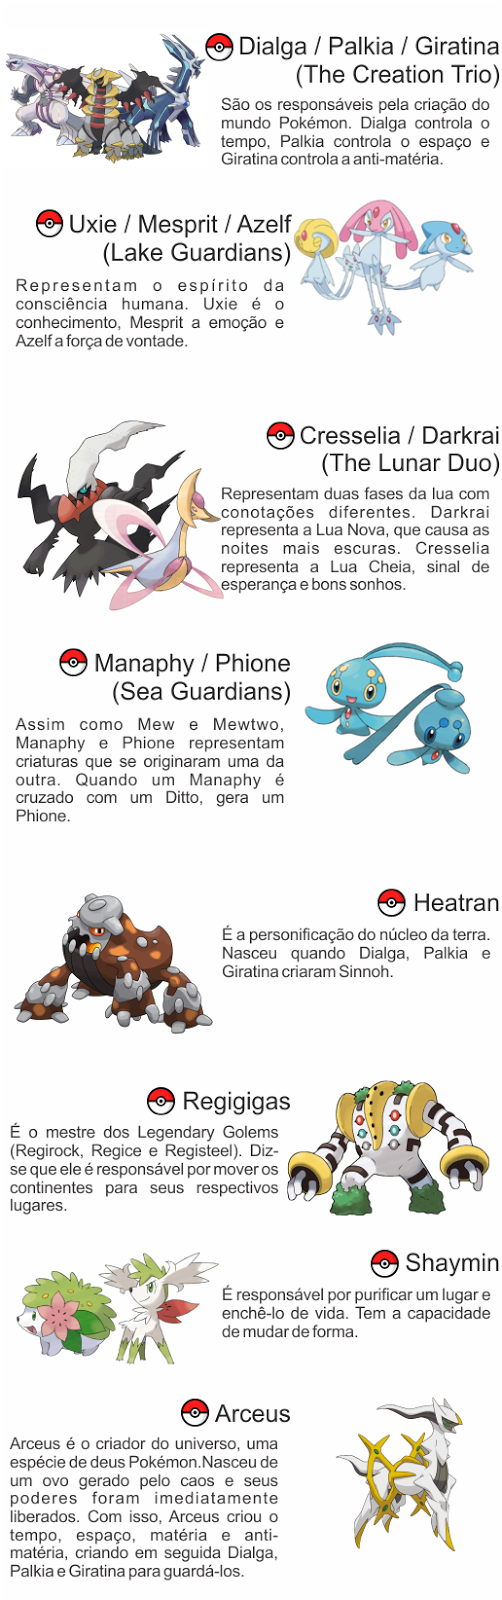 Pokémon - A Quarta Geração